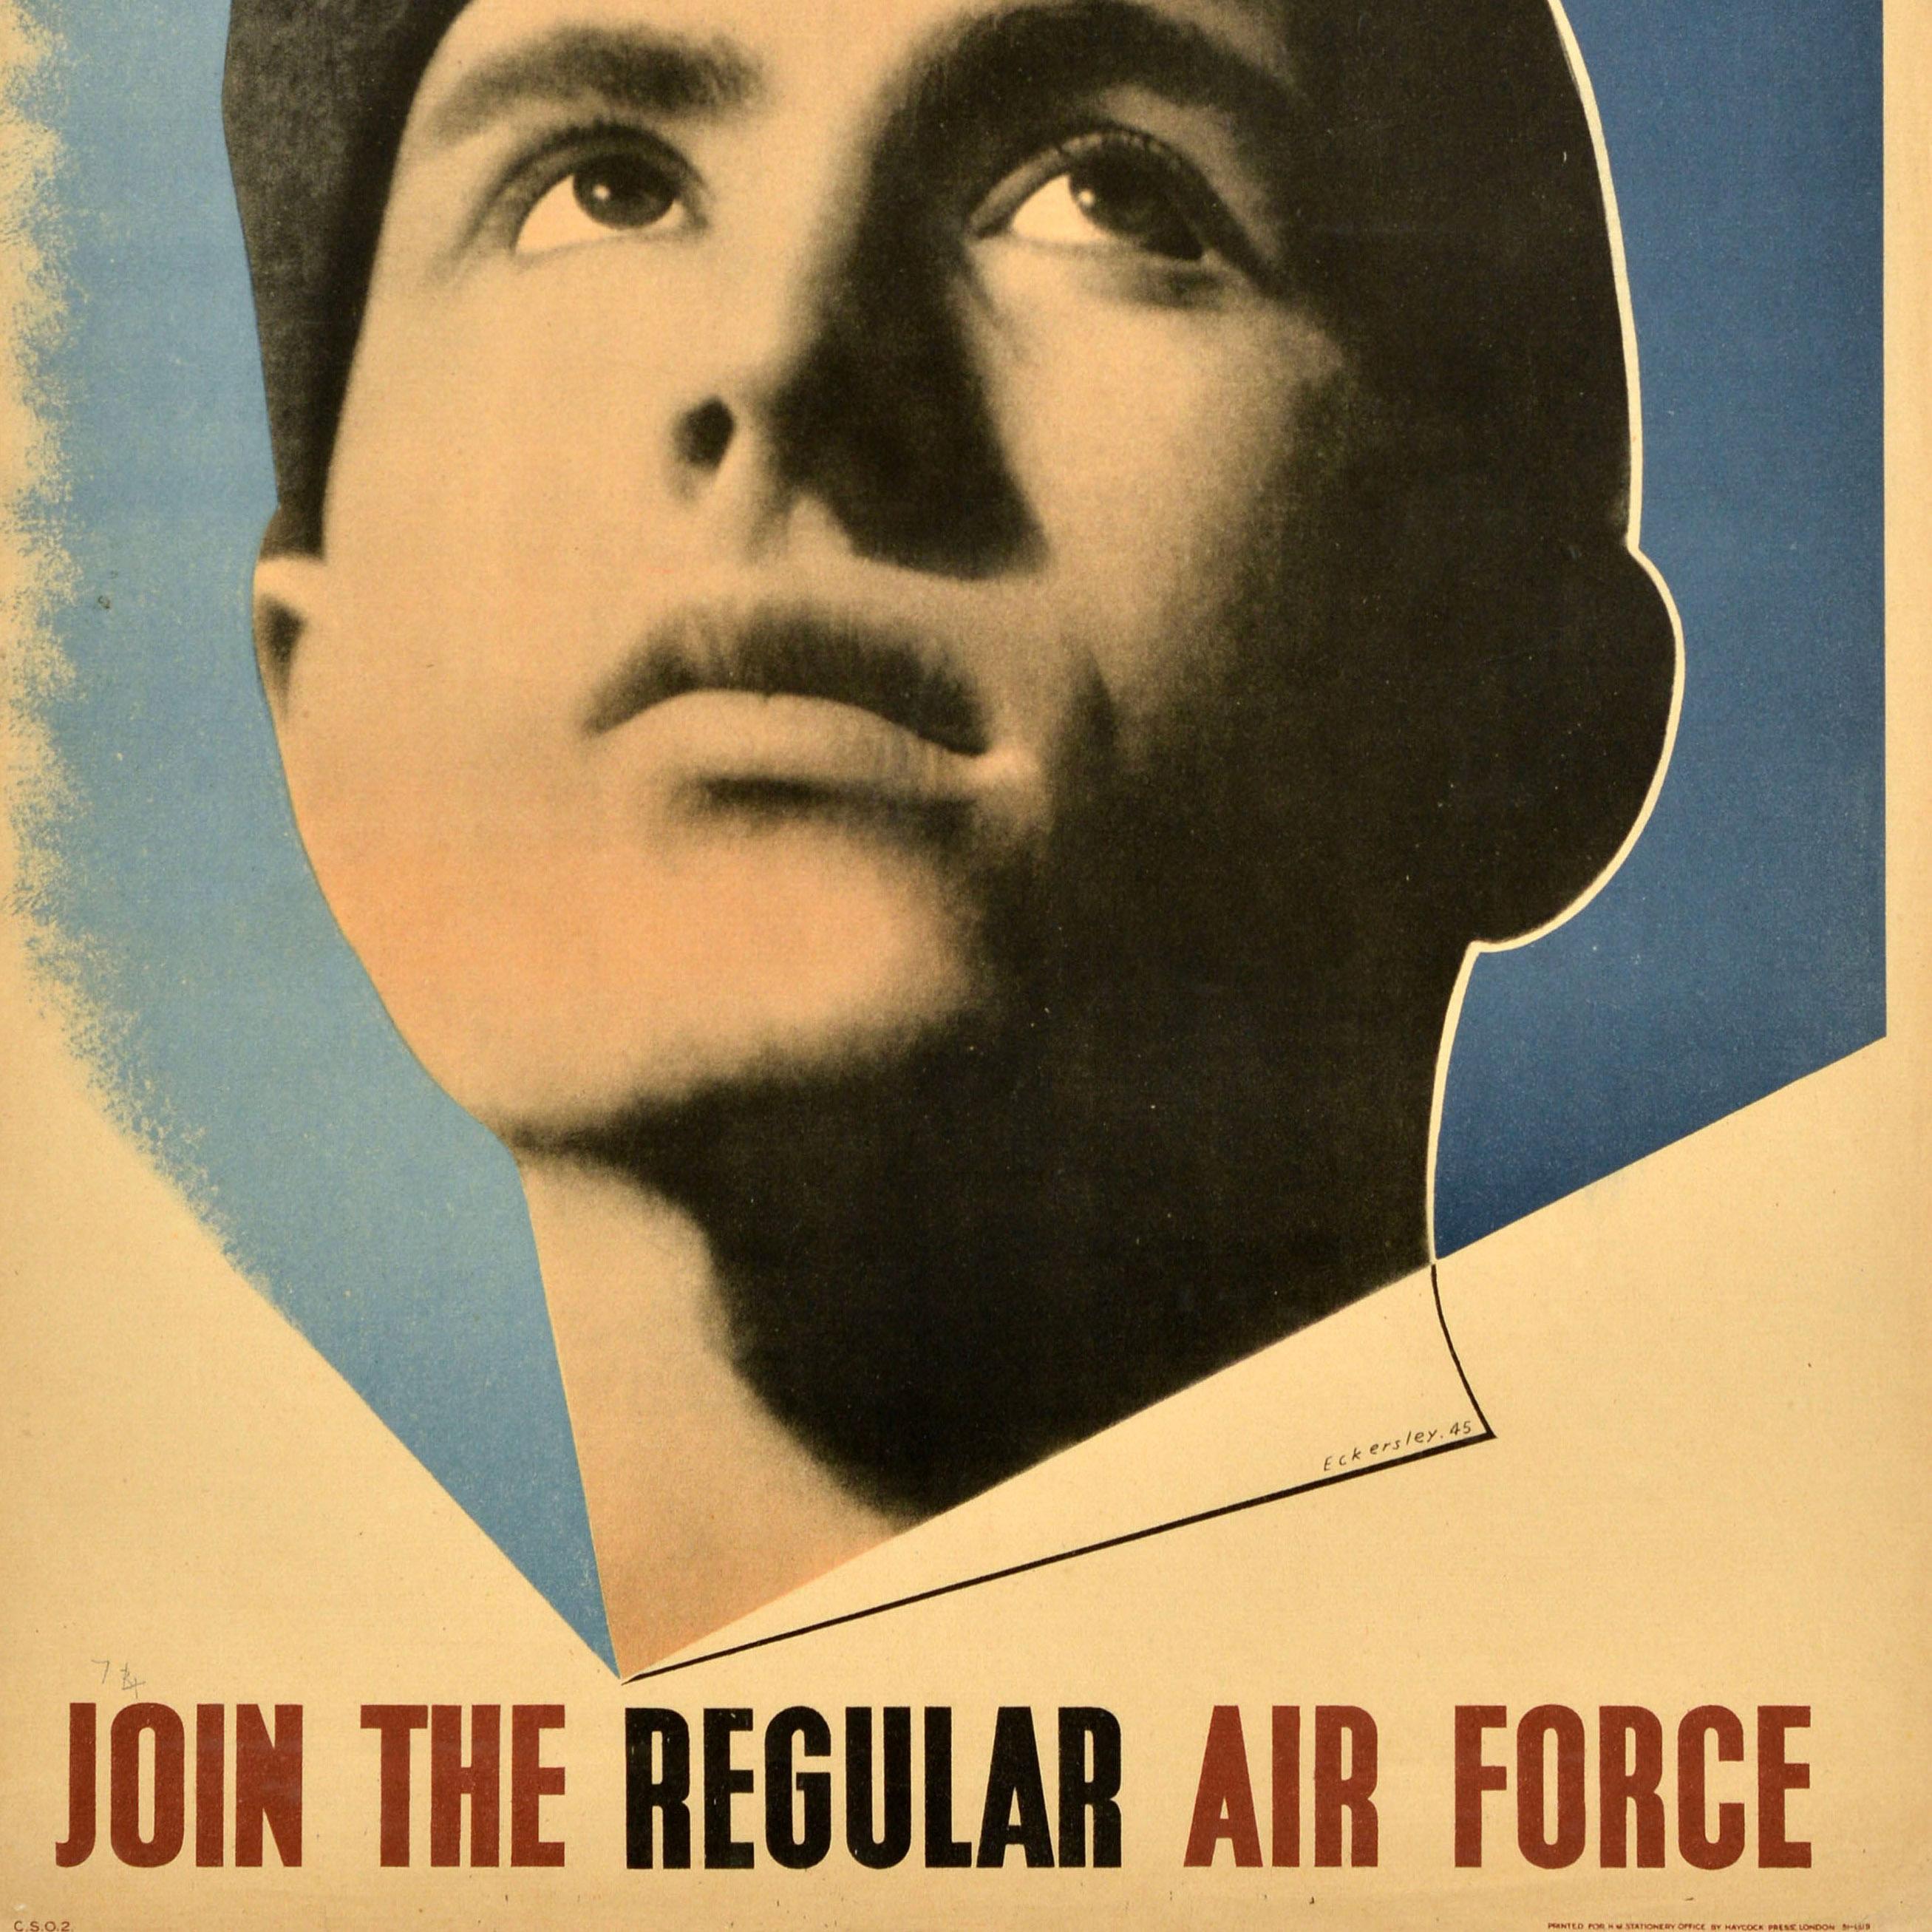 Originales Propagandaplakat für die Rekrutierung von Soldaten im Zweiten Weltkrieg - Join The Regular Air Force - mit einem großartigen Entwurf des bekannten Künstlers Tom Eckersley (1914-1997), der einen jungen Soldaten in Uniform zeigt, der schräg